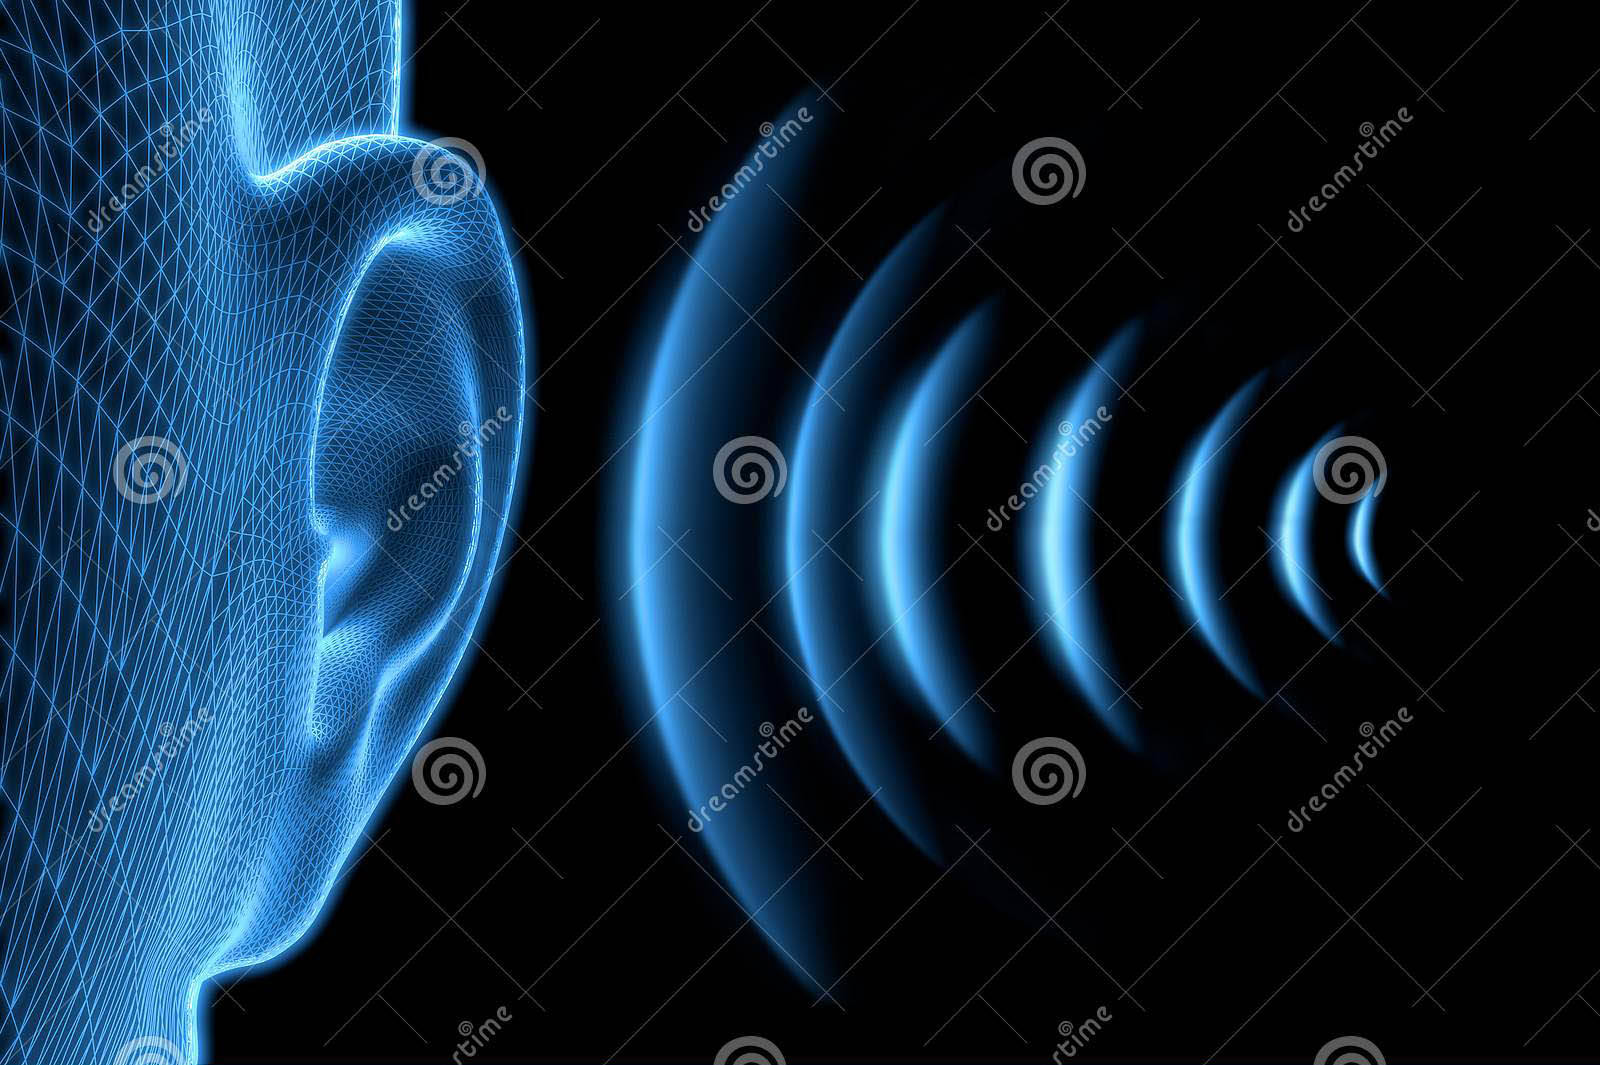 《科学进展(science advances)期刊上的研究称,声波在介质中传播